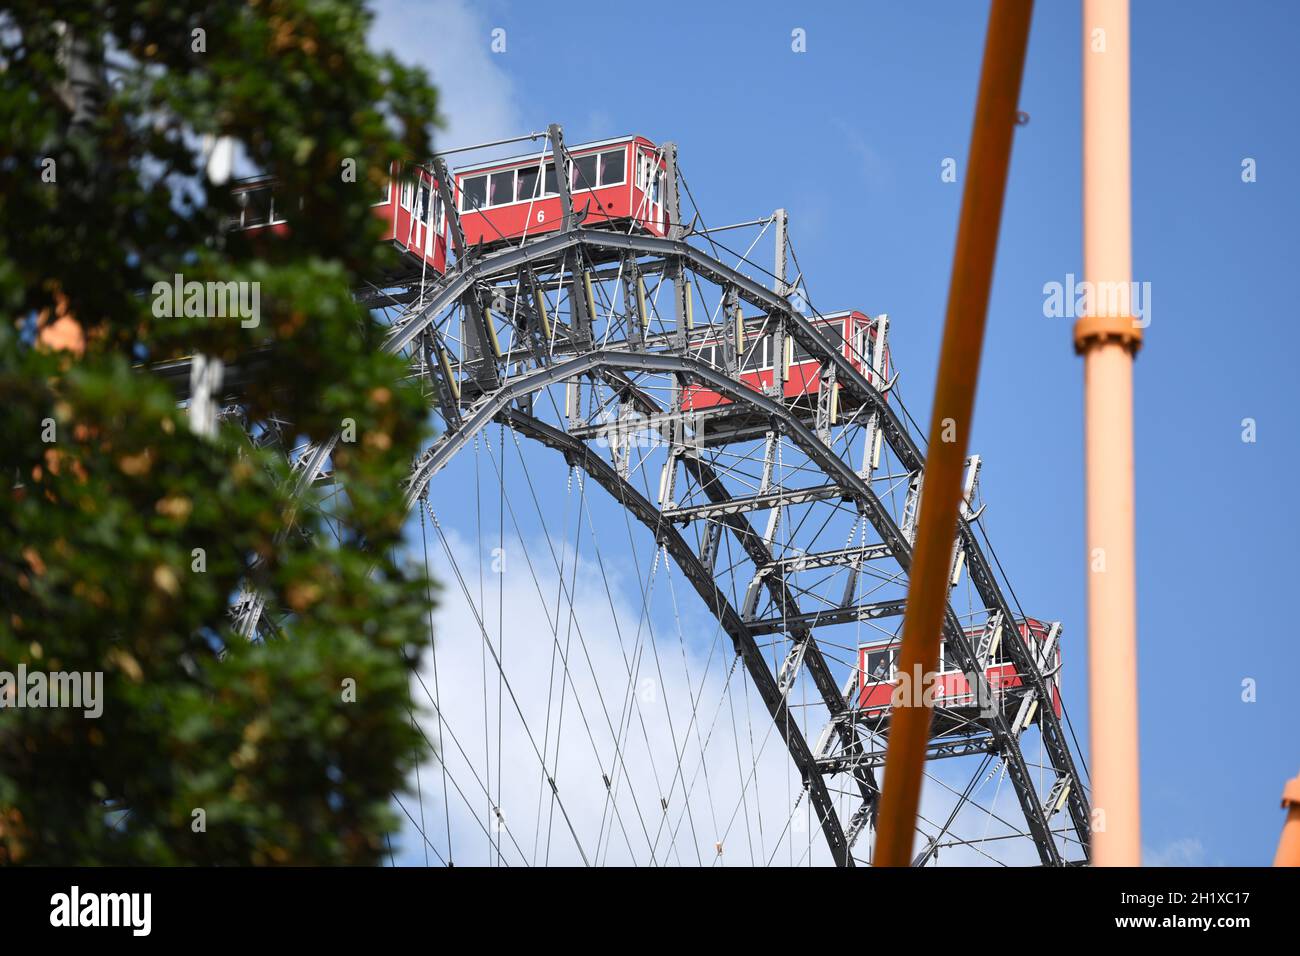 Riesenrad im großen Vergnügungspark 'Prater' in Wien, Österreich, Europa - Ferris wheel in the large amusement park 'Prater' in Vienna, Austria, Europ Stock Photo